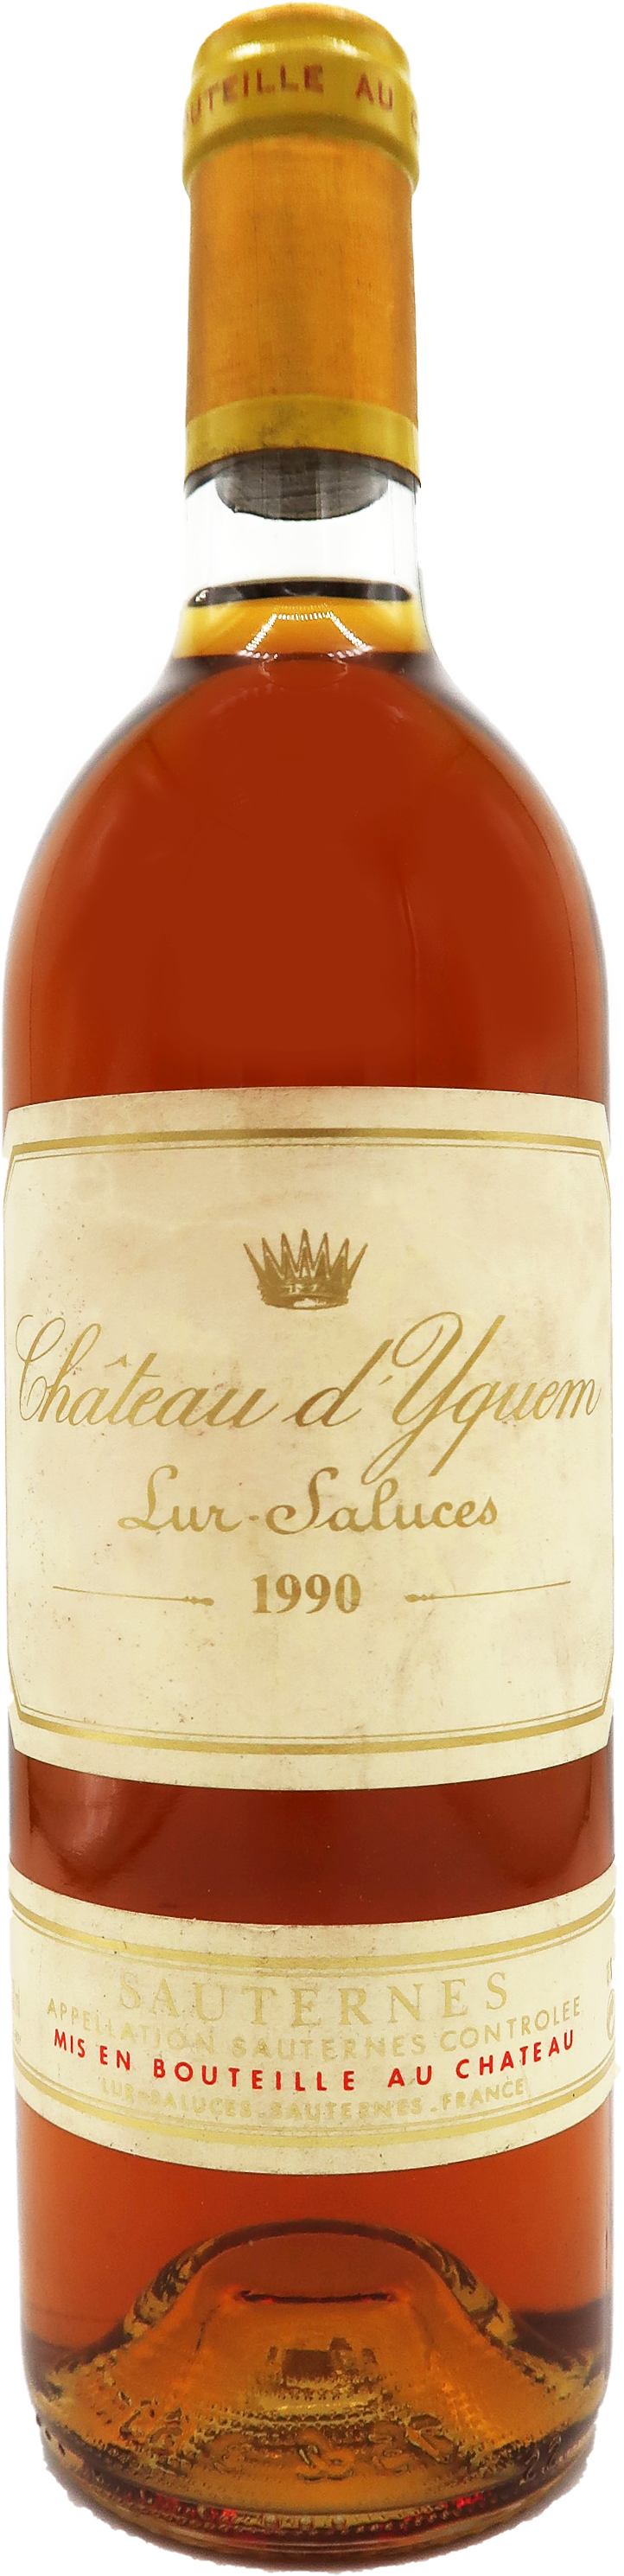 Château d'Yquem Lur-Saluces 1990 - Sauternes